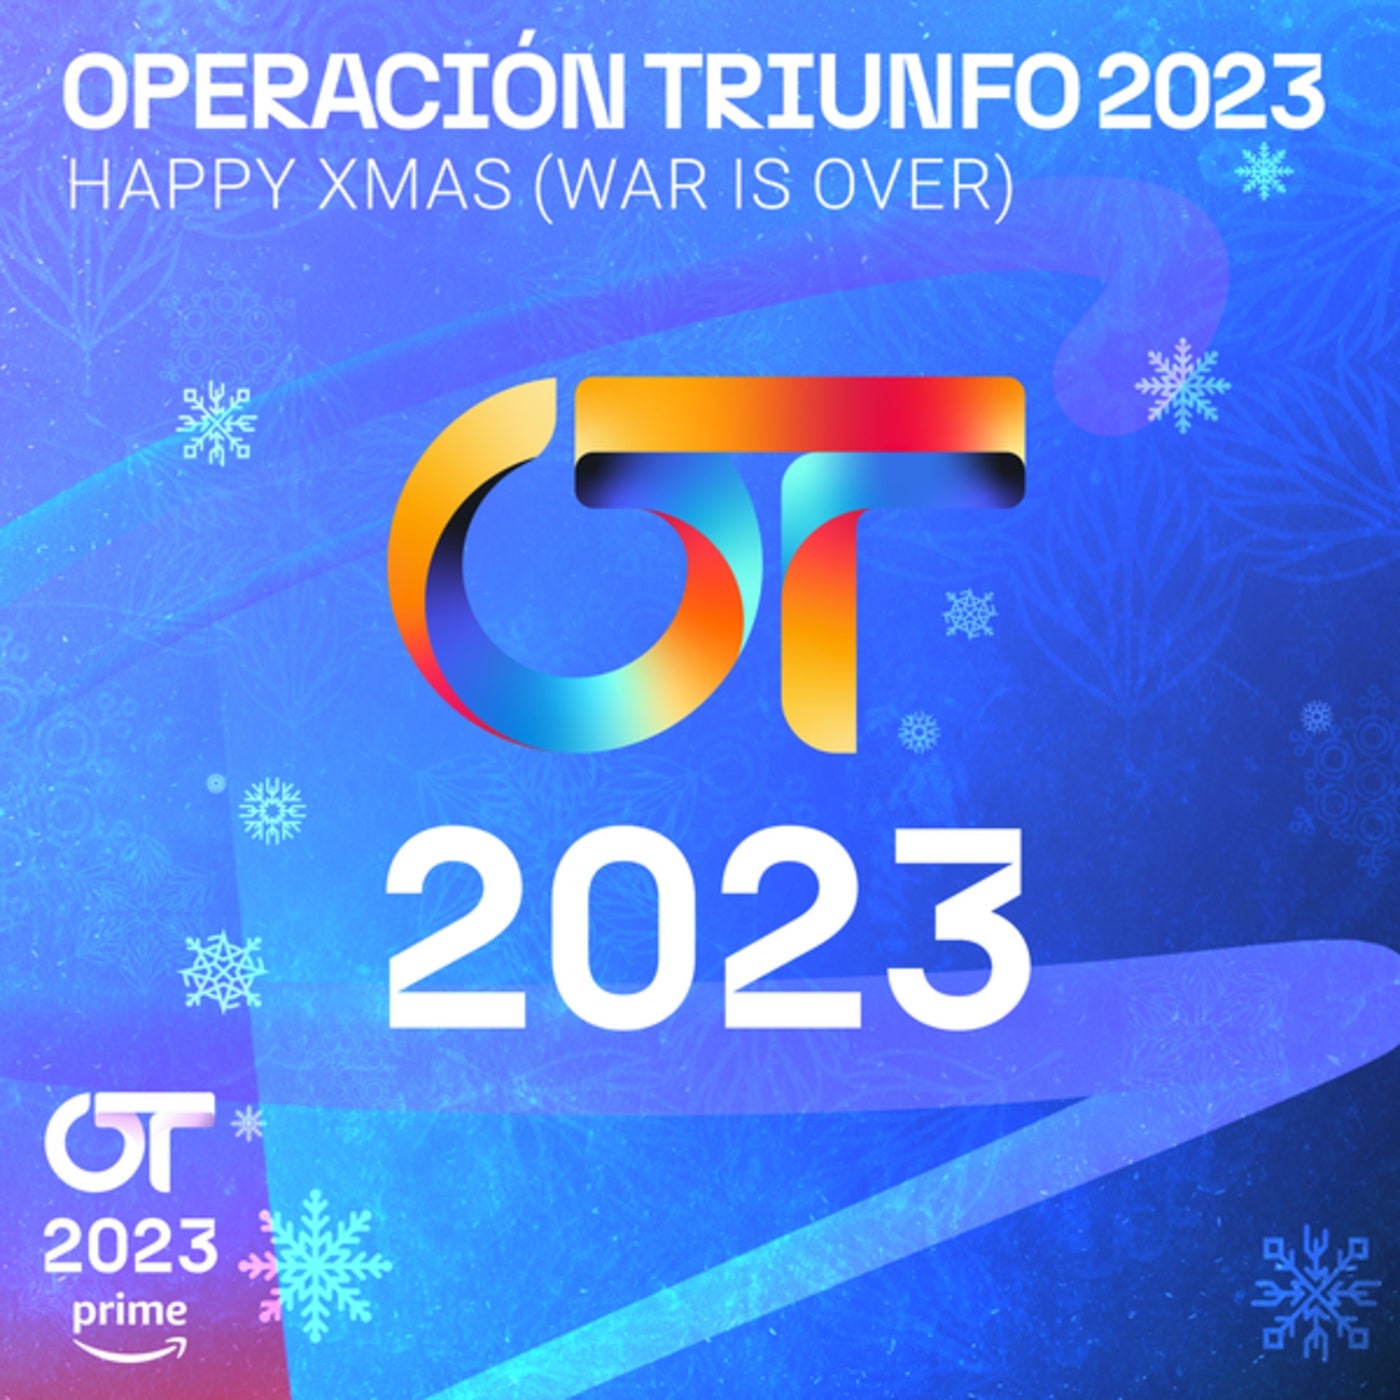 When did Operación Triunfo 2023 release OT Gala 5 (Operación Triunfo 2023)?